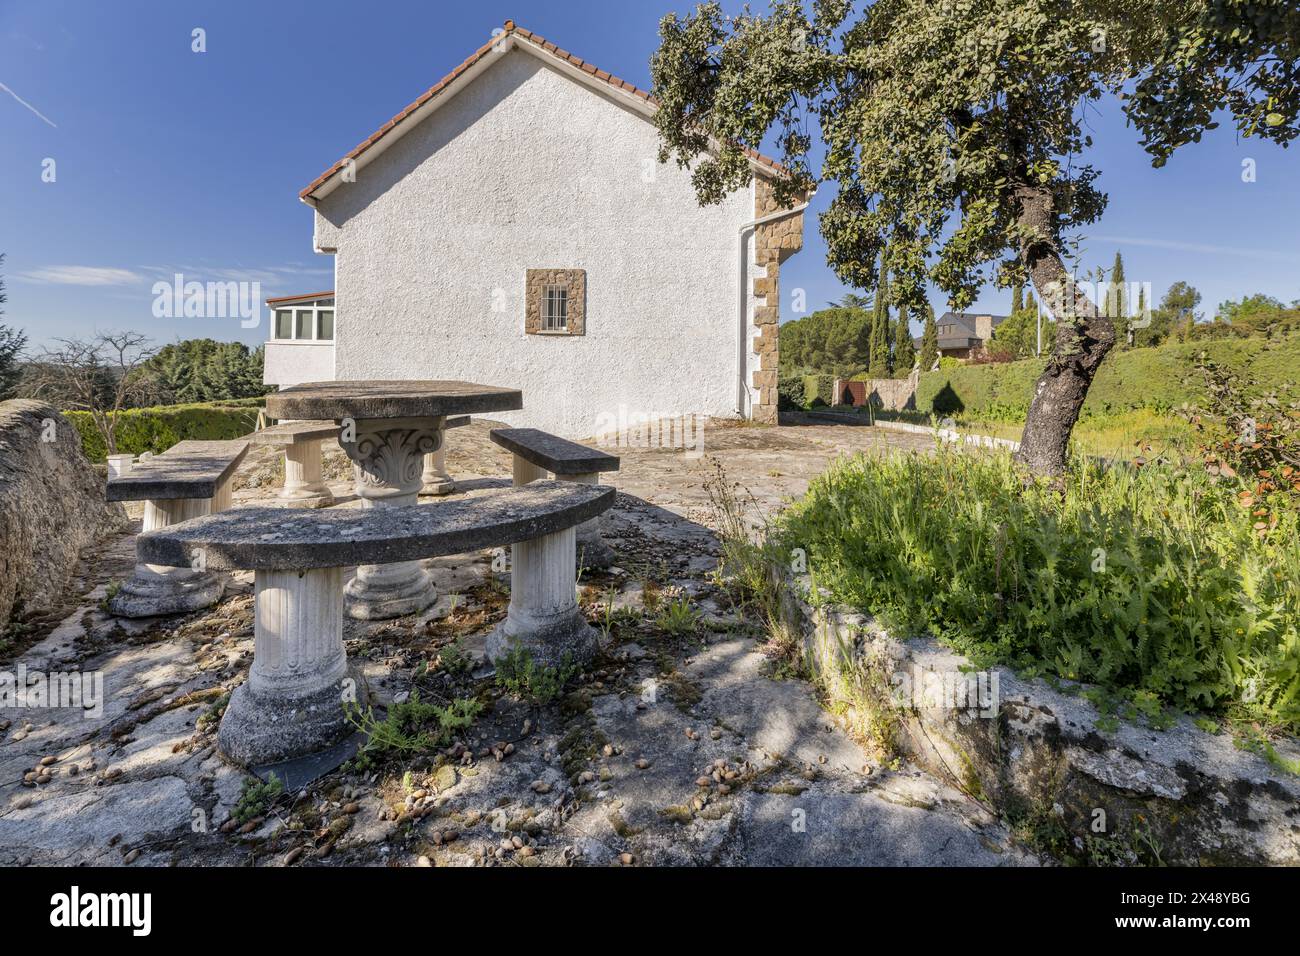 Una casa di campagna con facciate bianche, pavimenti in pietra sul terreno e un tavolo con panchine di cemento Foto Stock